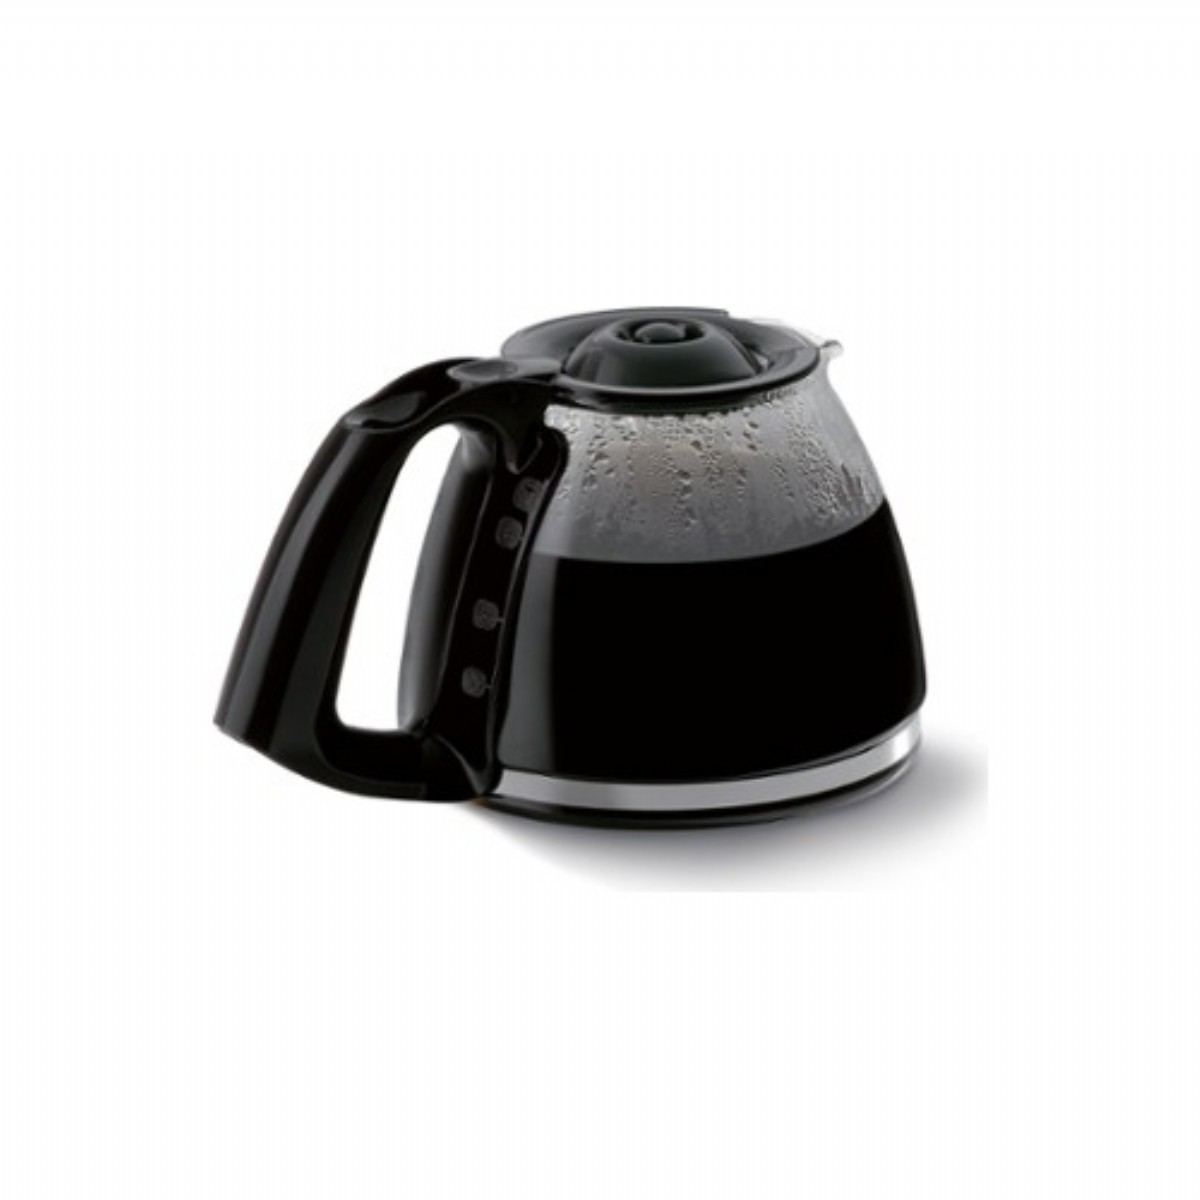 Filtre Kahve Makinesi | Tefal Subito Mug Filtre Kahve Makinesi | CM2908 | Tefal Subito Mug Filtre Kahve Makinesi, tefal filtre, kahve makinesi,subito mug kahve makinesi, CM2908, 2908, filtre kahve makinesi, mug filtre kahve fiyat | 